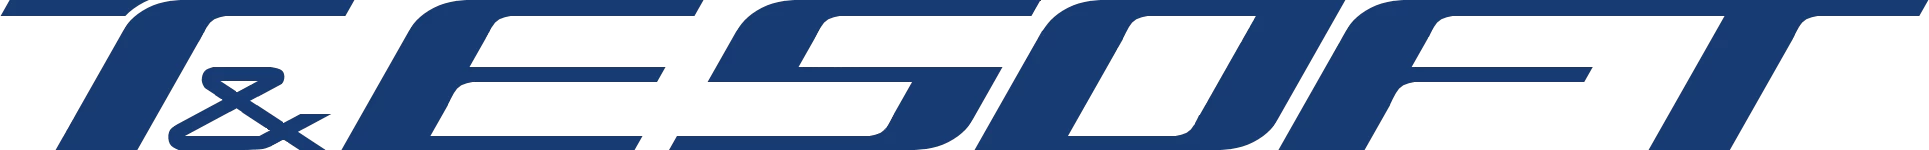 T&E Soft developer logo